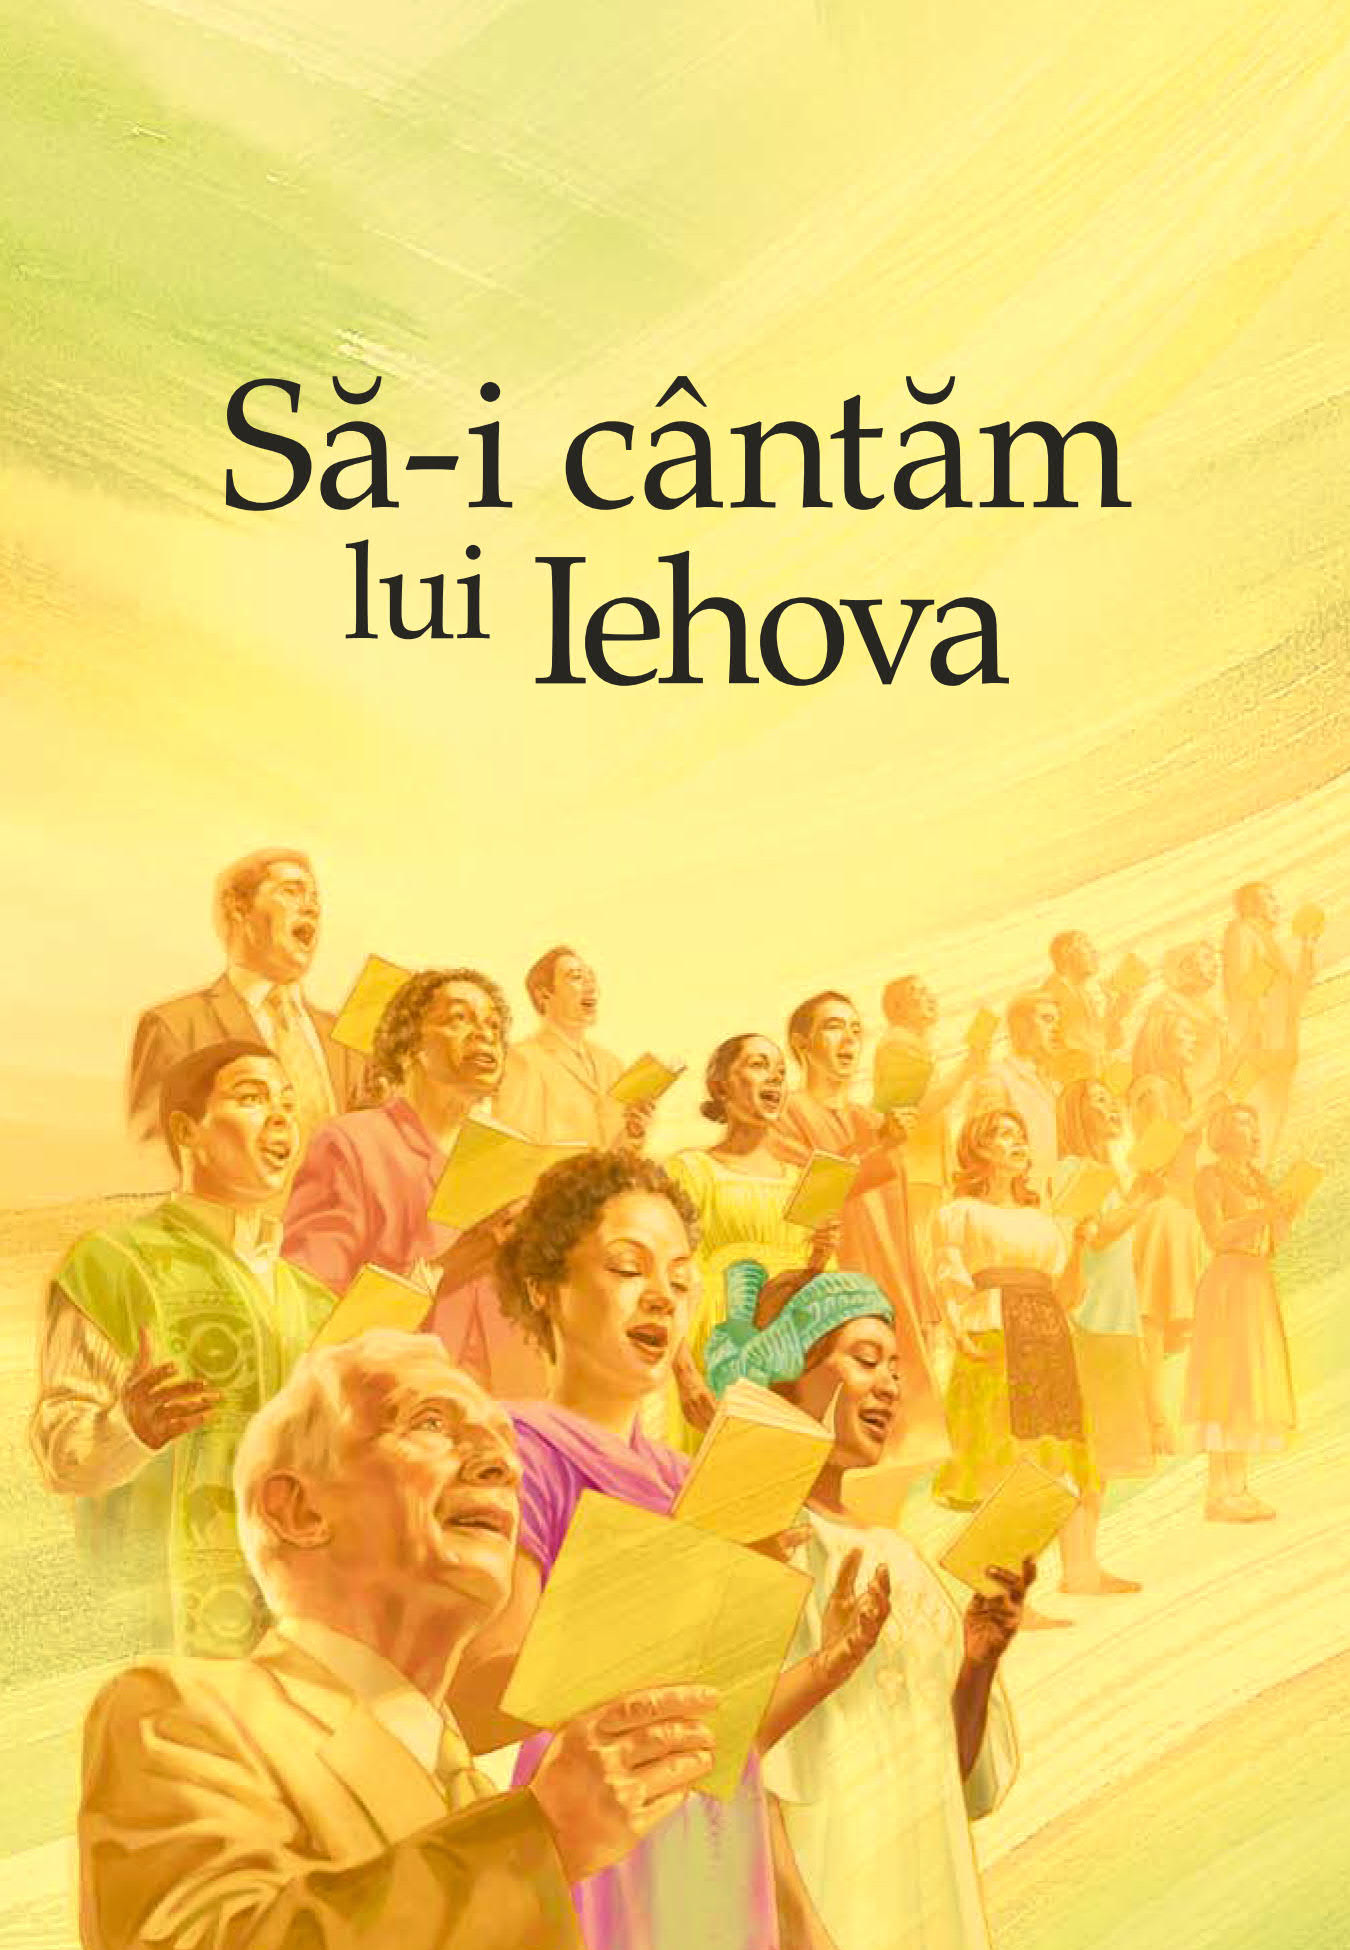 Coperta cărţii „Să-i cântăm lui Iehova”